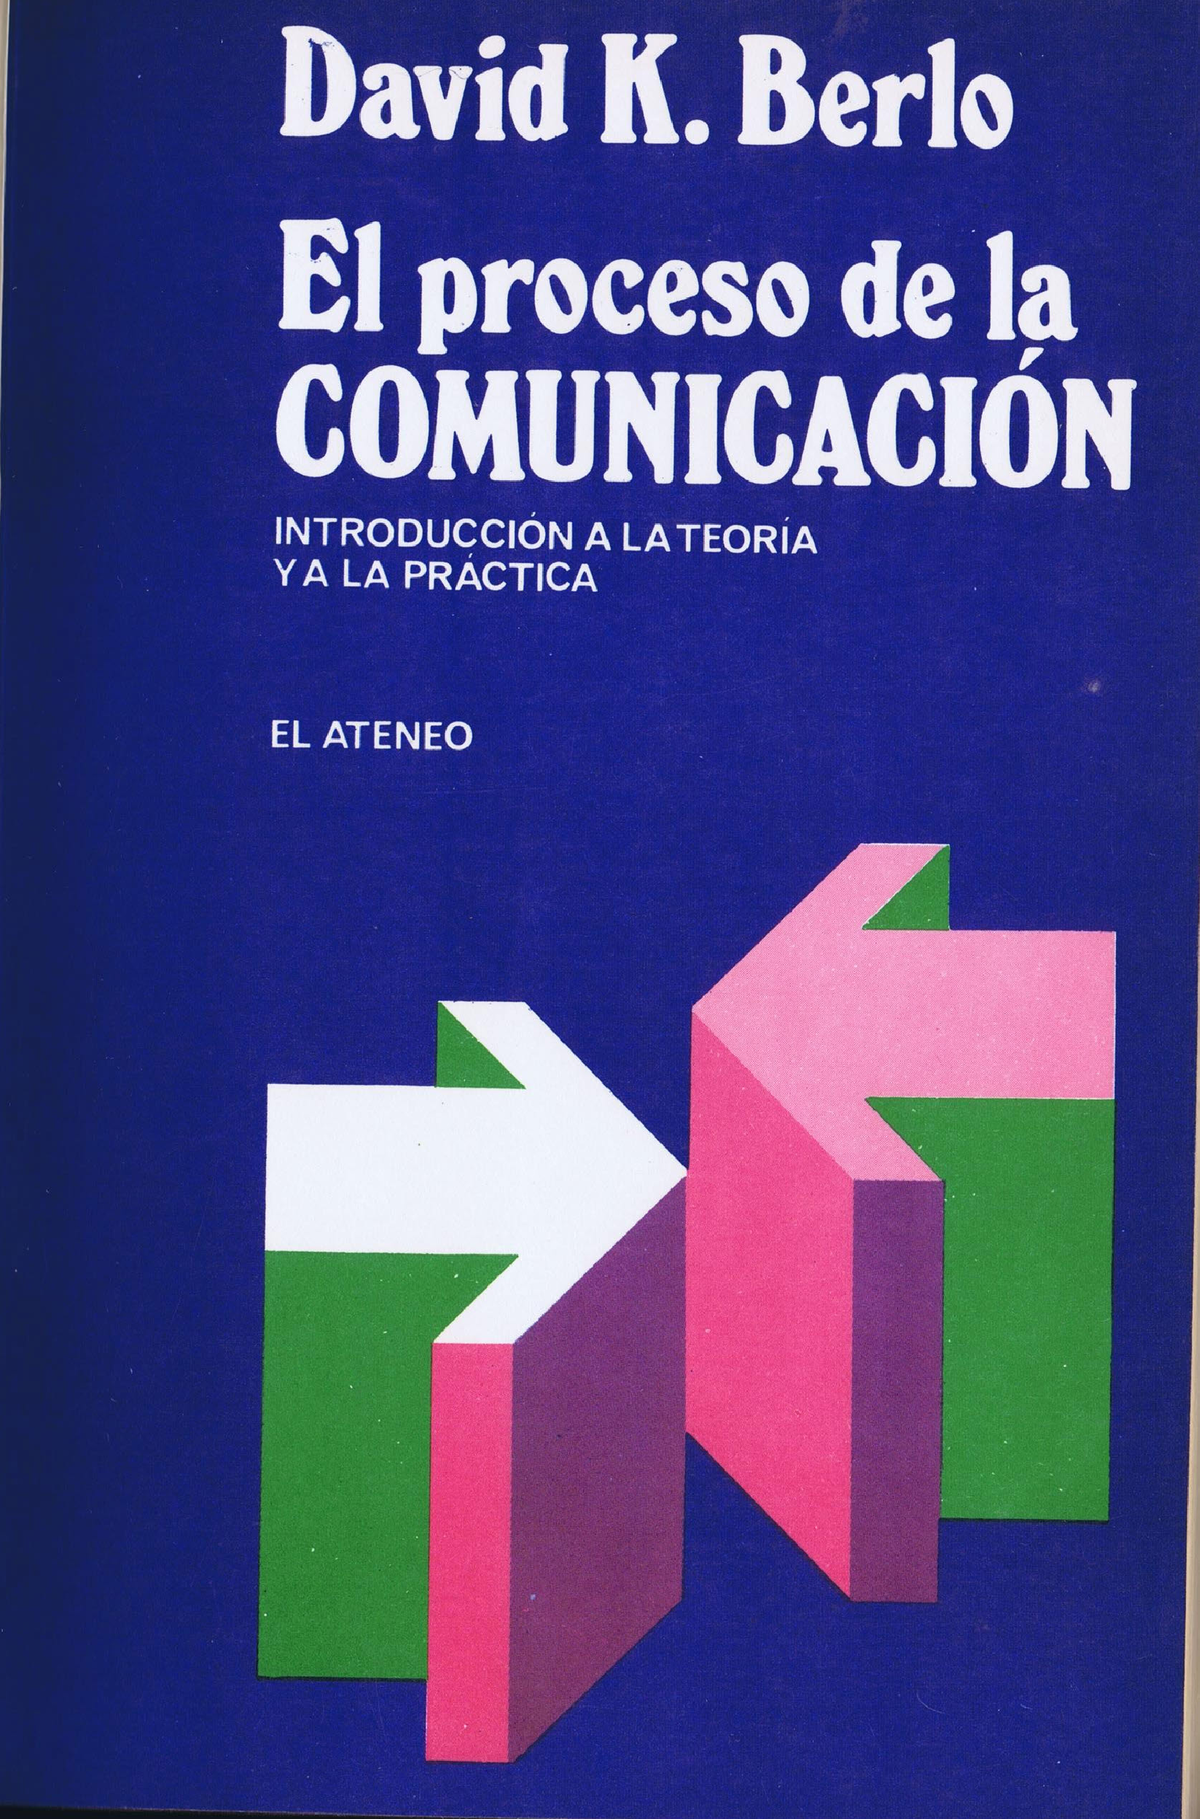 Berlo, el-proceso-de-la-comunicacion - Teoría de la Comunicación - Studocu